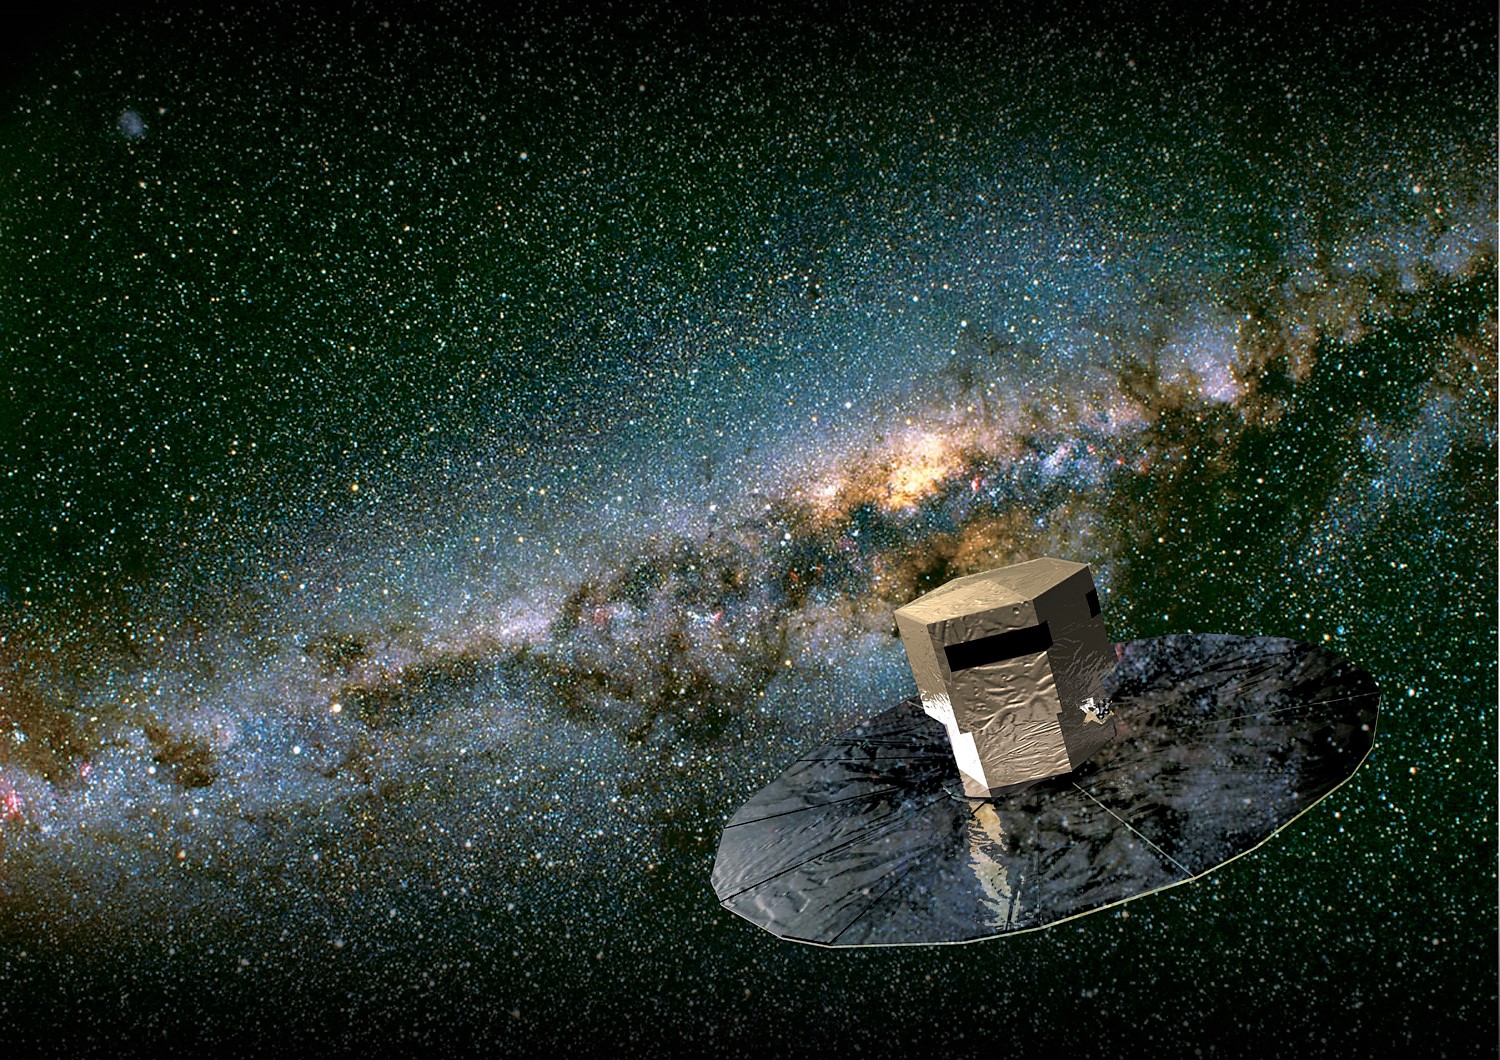 Astrometrie-Sonde Gaia vor dem Band der Milchstraße